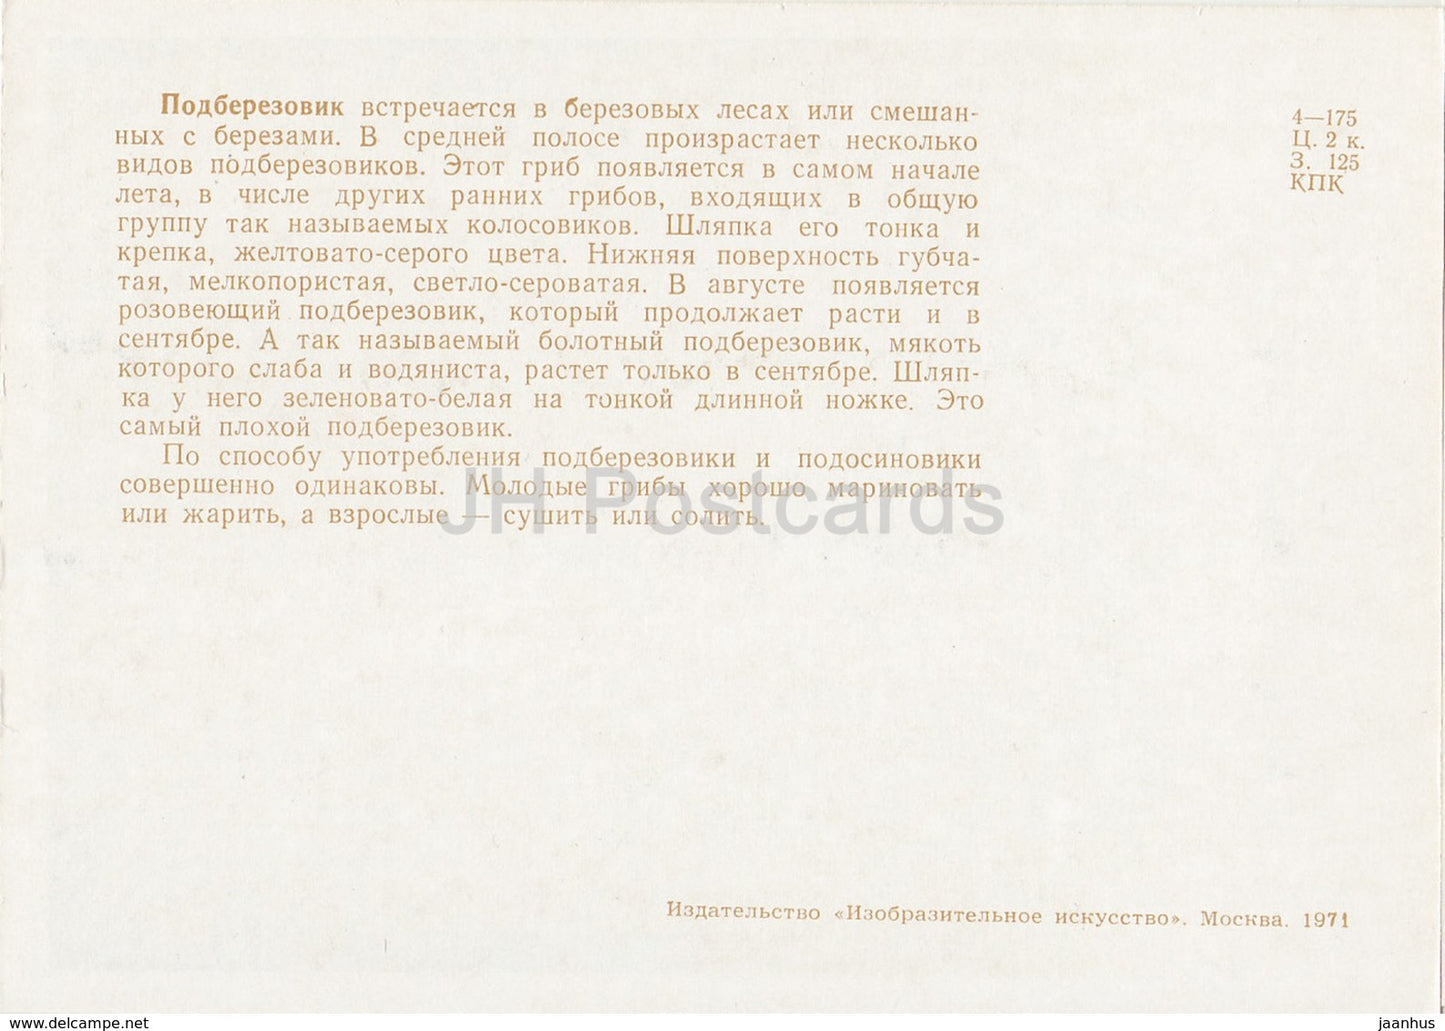 Boletus à calotte brune - champignons - illustration - 1971 - Russie URSS - inutilisé